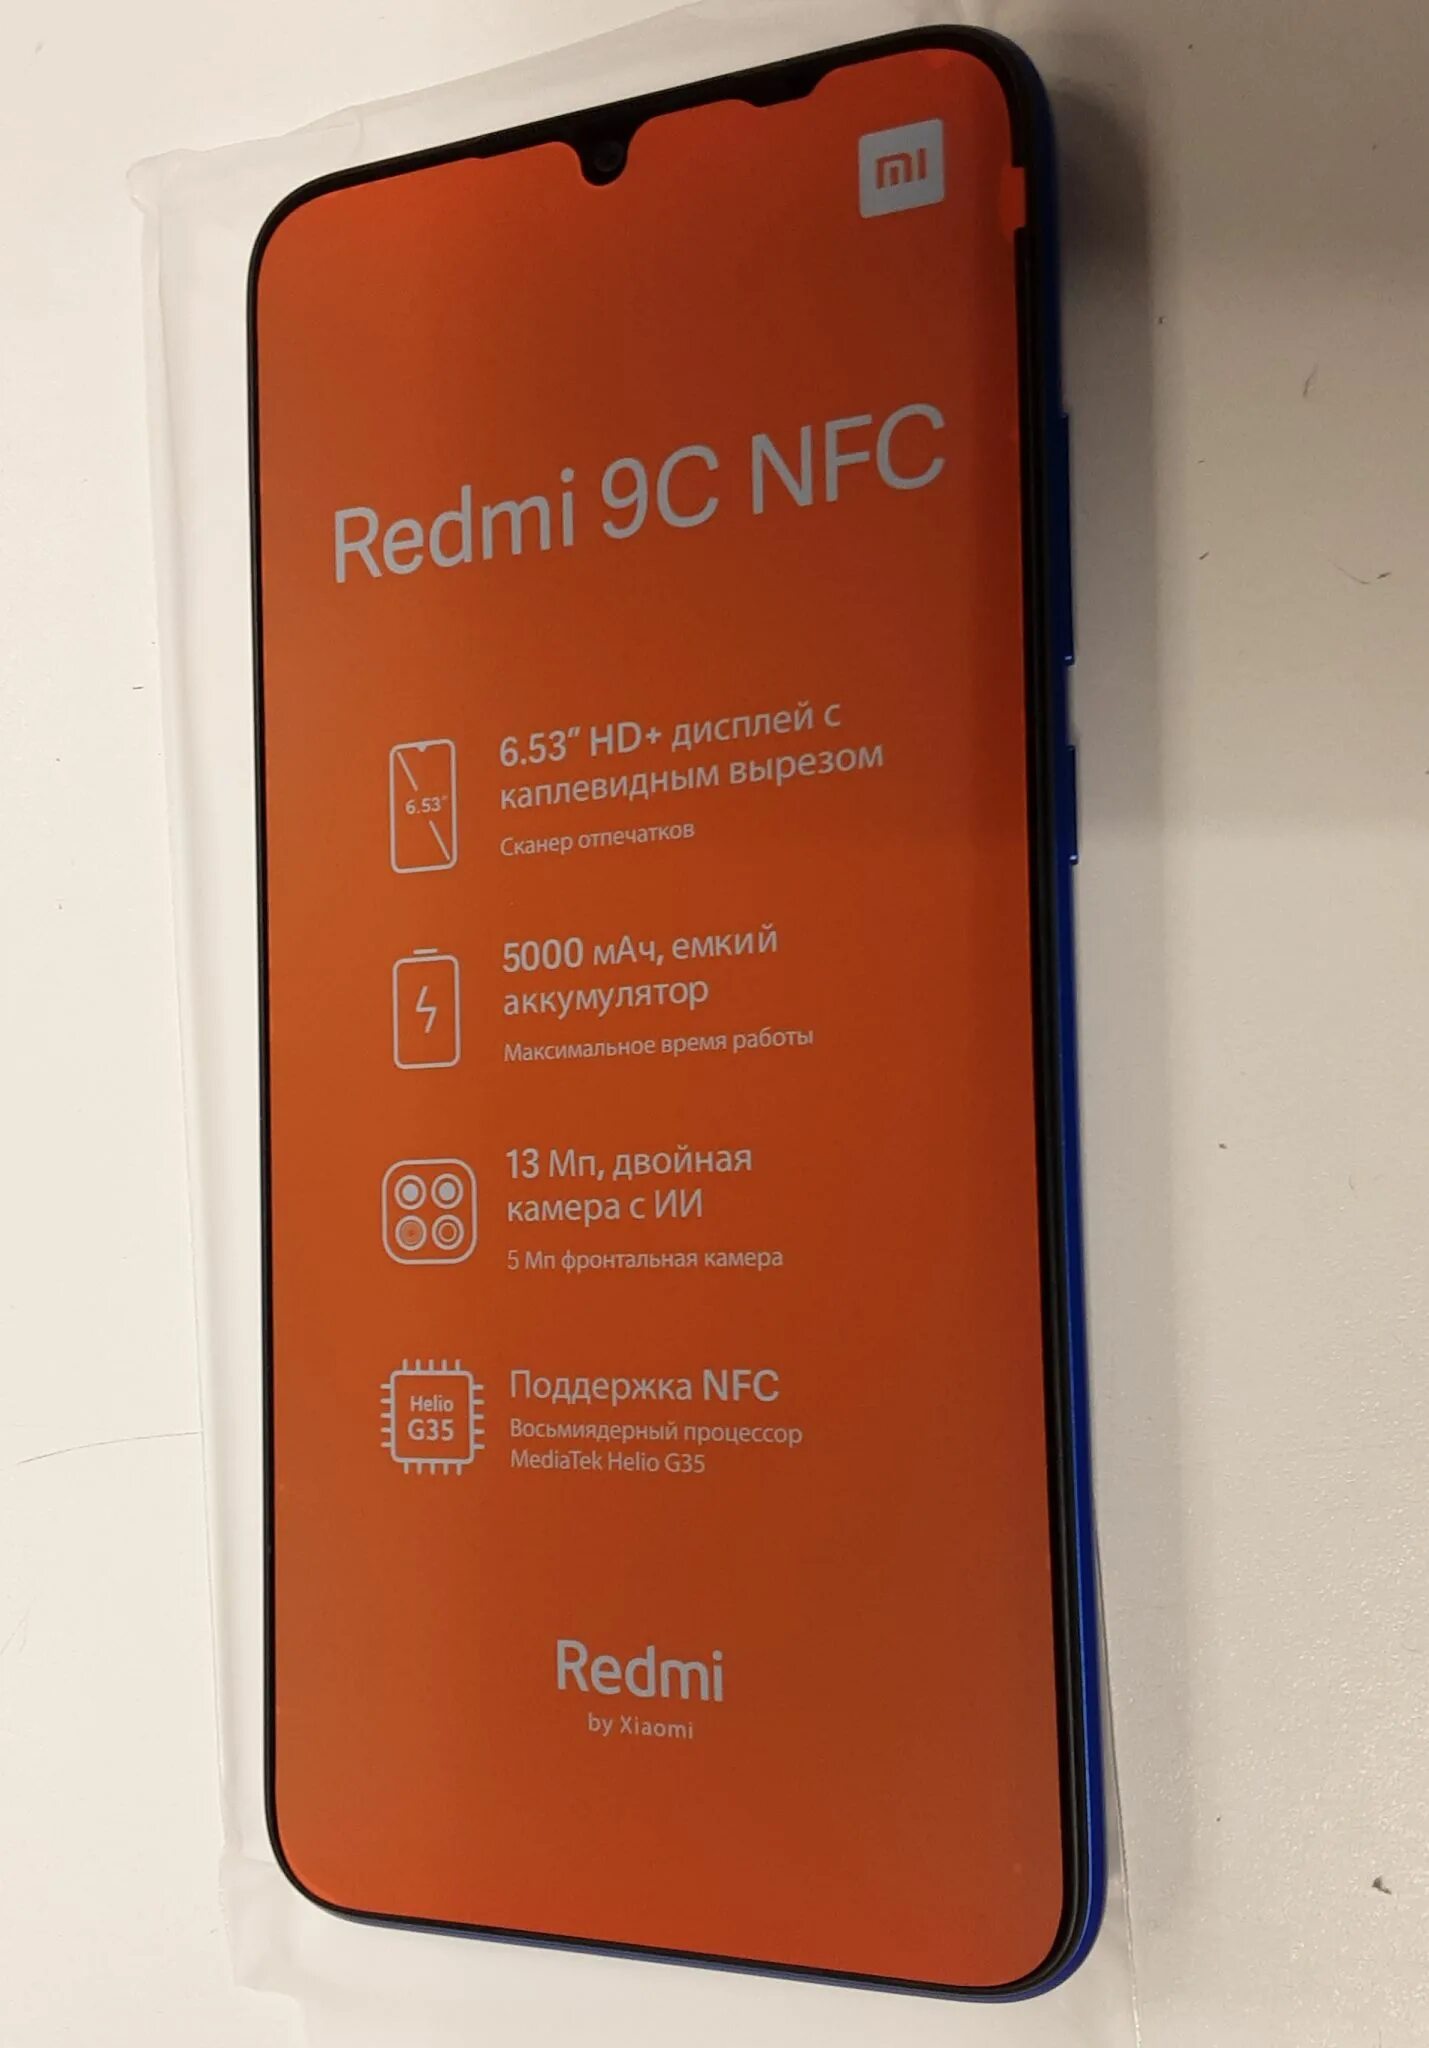 Redmi 9 3 64gb. Redmi 9c. Смартфон Xiaomi Redmi 9c 3/64. Смартфон Xiaomi 9c 3 64gb. Xiaomi Redmi 9c комплектация.